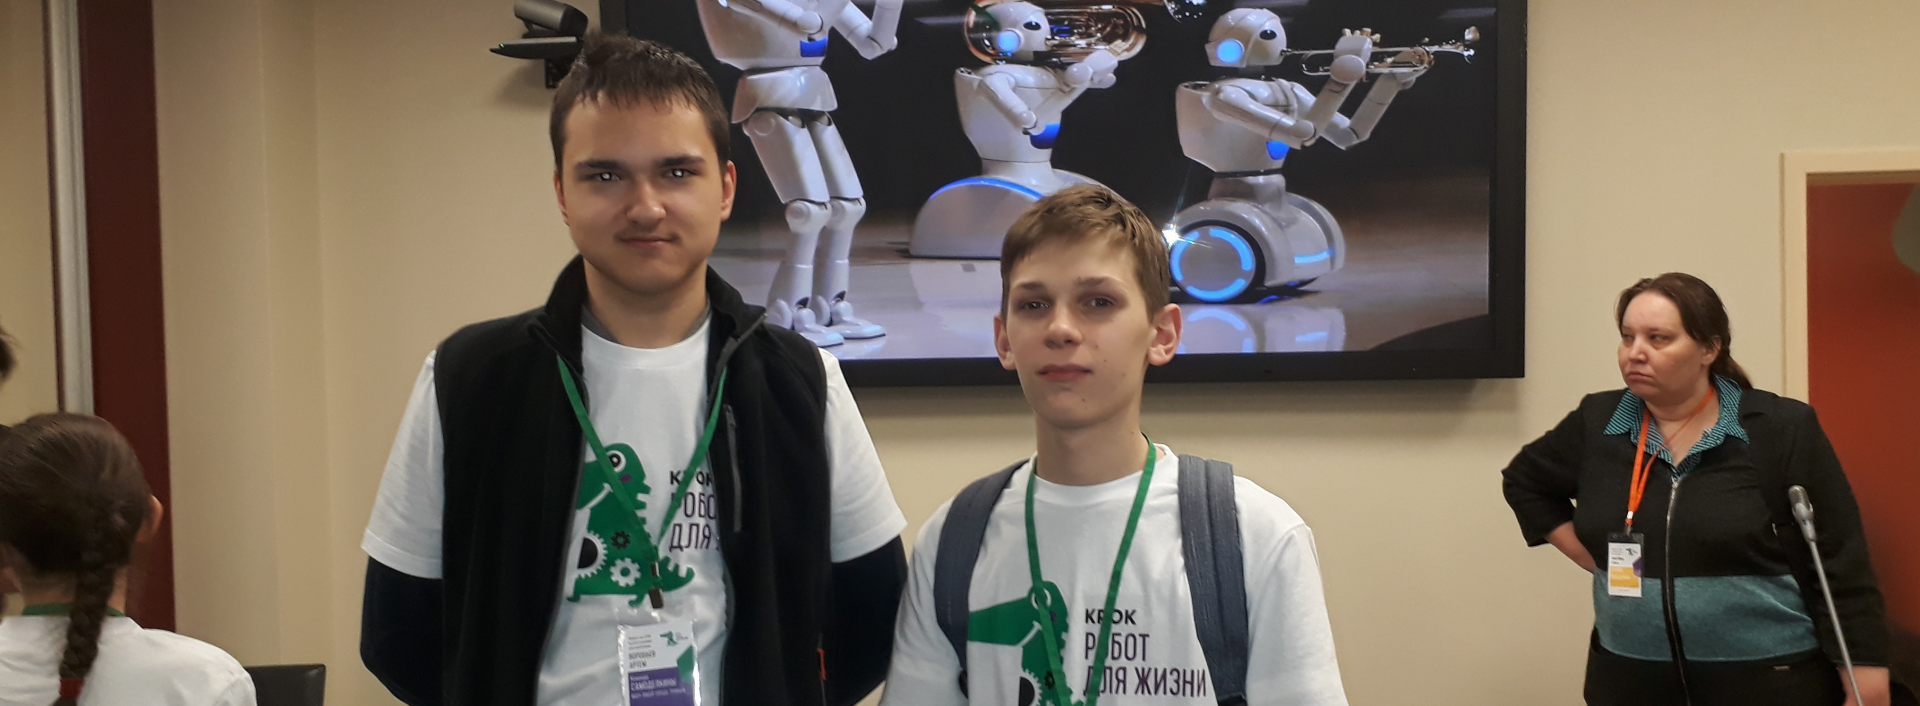 Лицеисты победили в робототехническом турнире